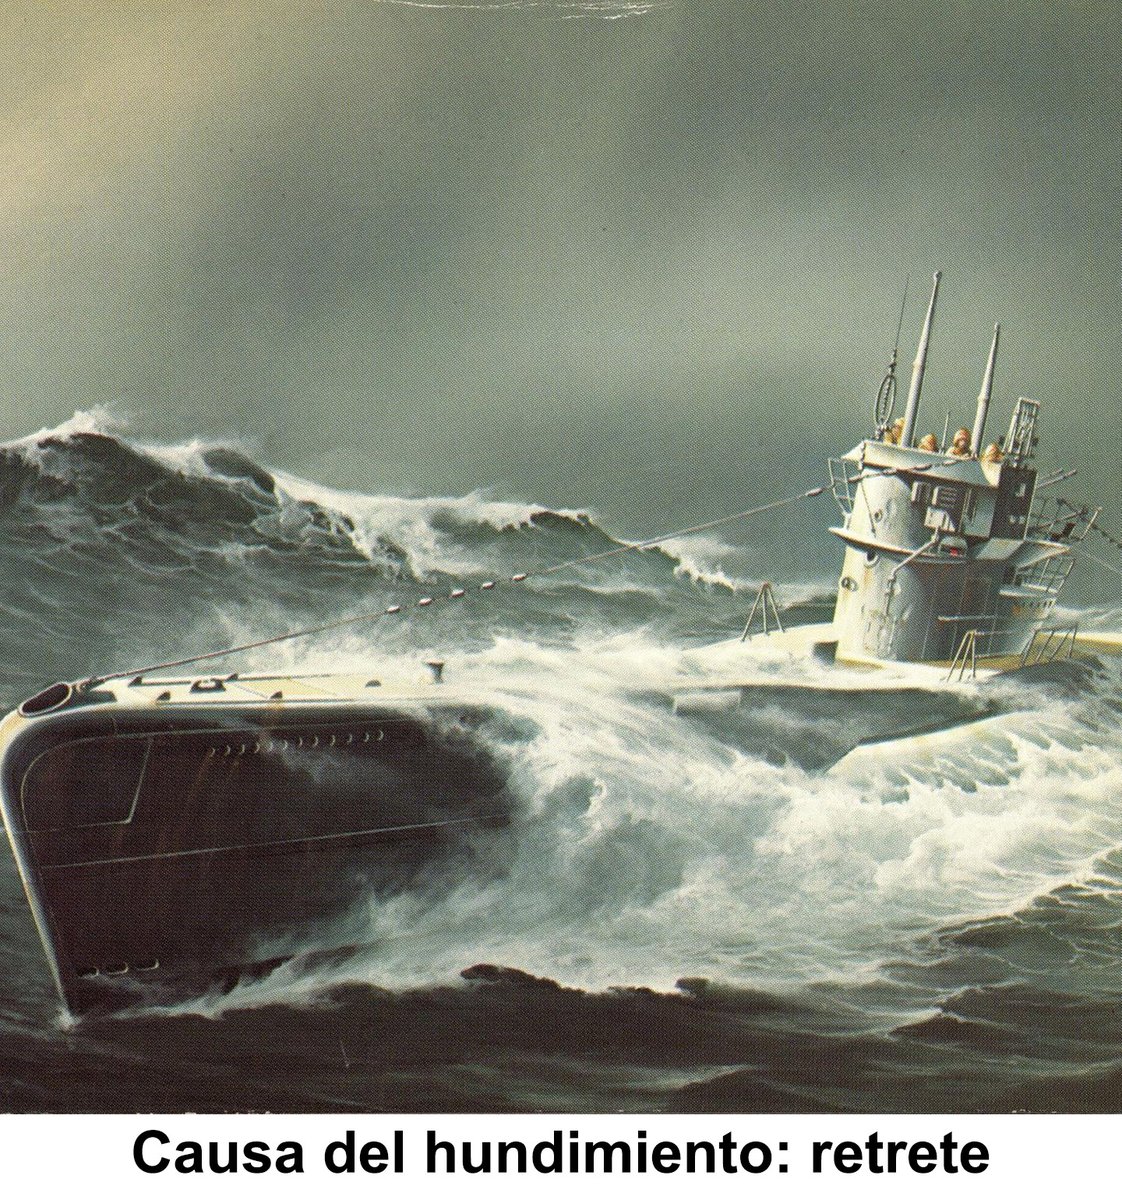 🚨HILO🚨

El 14 de abril de 1945 alguien la cagó literalmente en el Mar del Norte. Usando mal el inodoro de un submarino, terminó enviándolo al fondo del mar.

¿Pero cómo funciona el inodoro de un submarino? ¿Y cómo se hunde un submarino de 700 toneladas con un inodoro? 👇👇